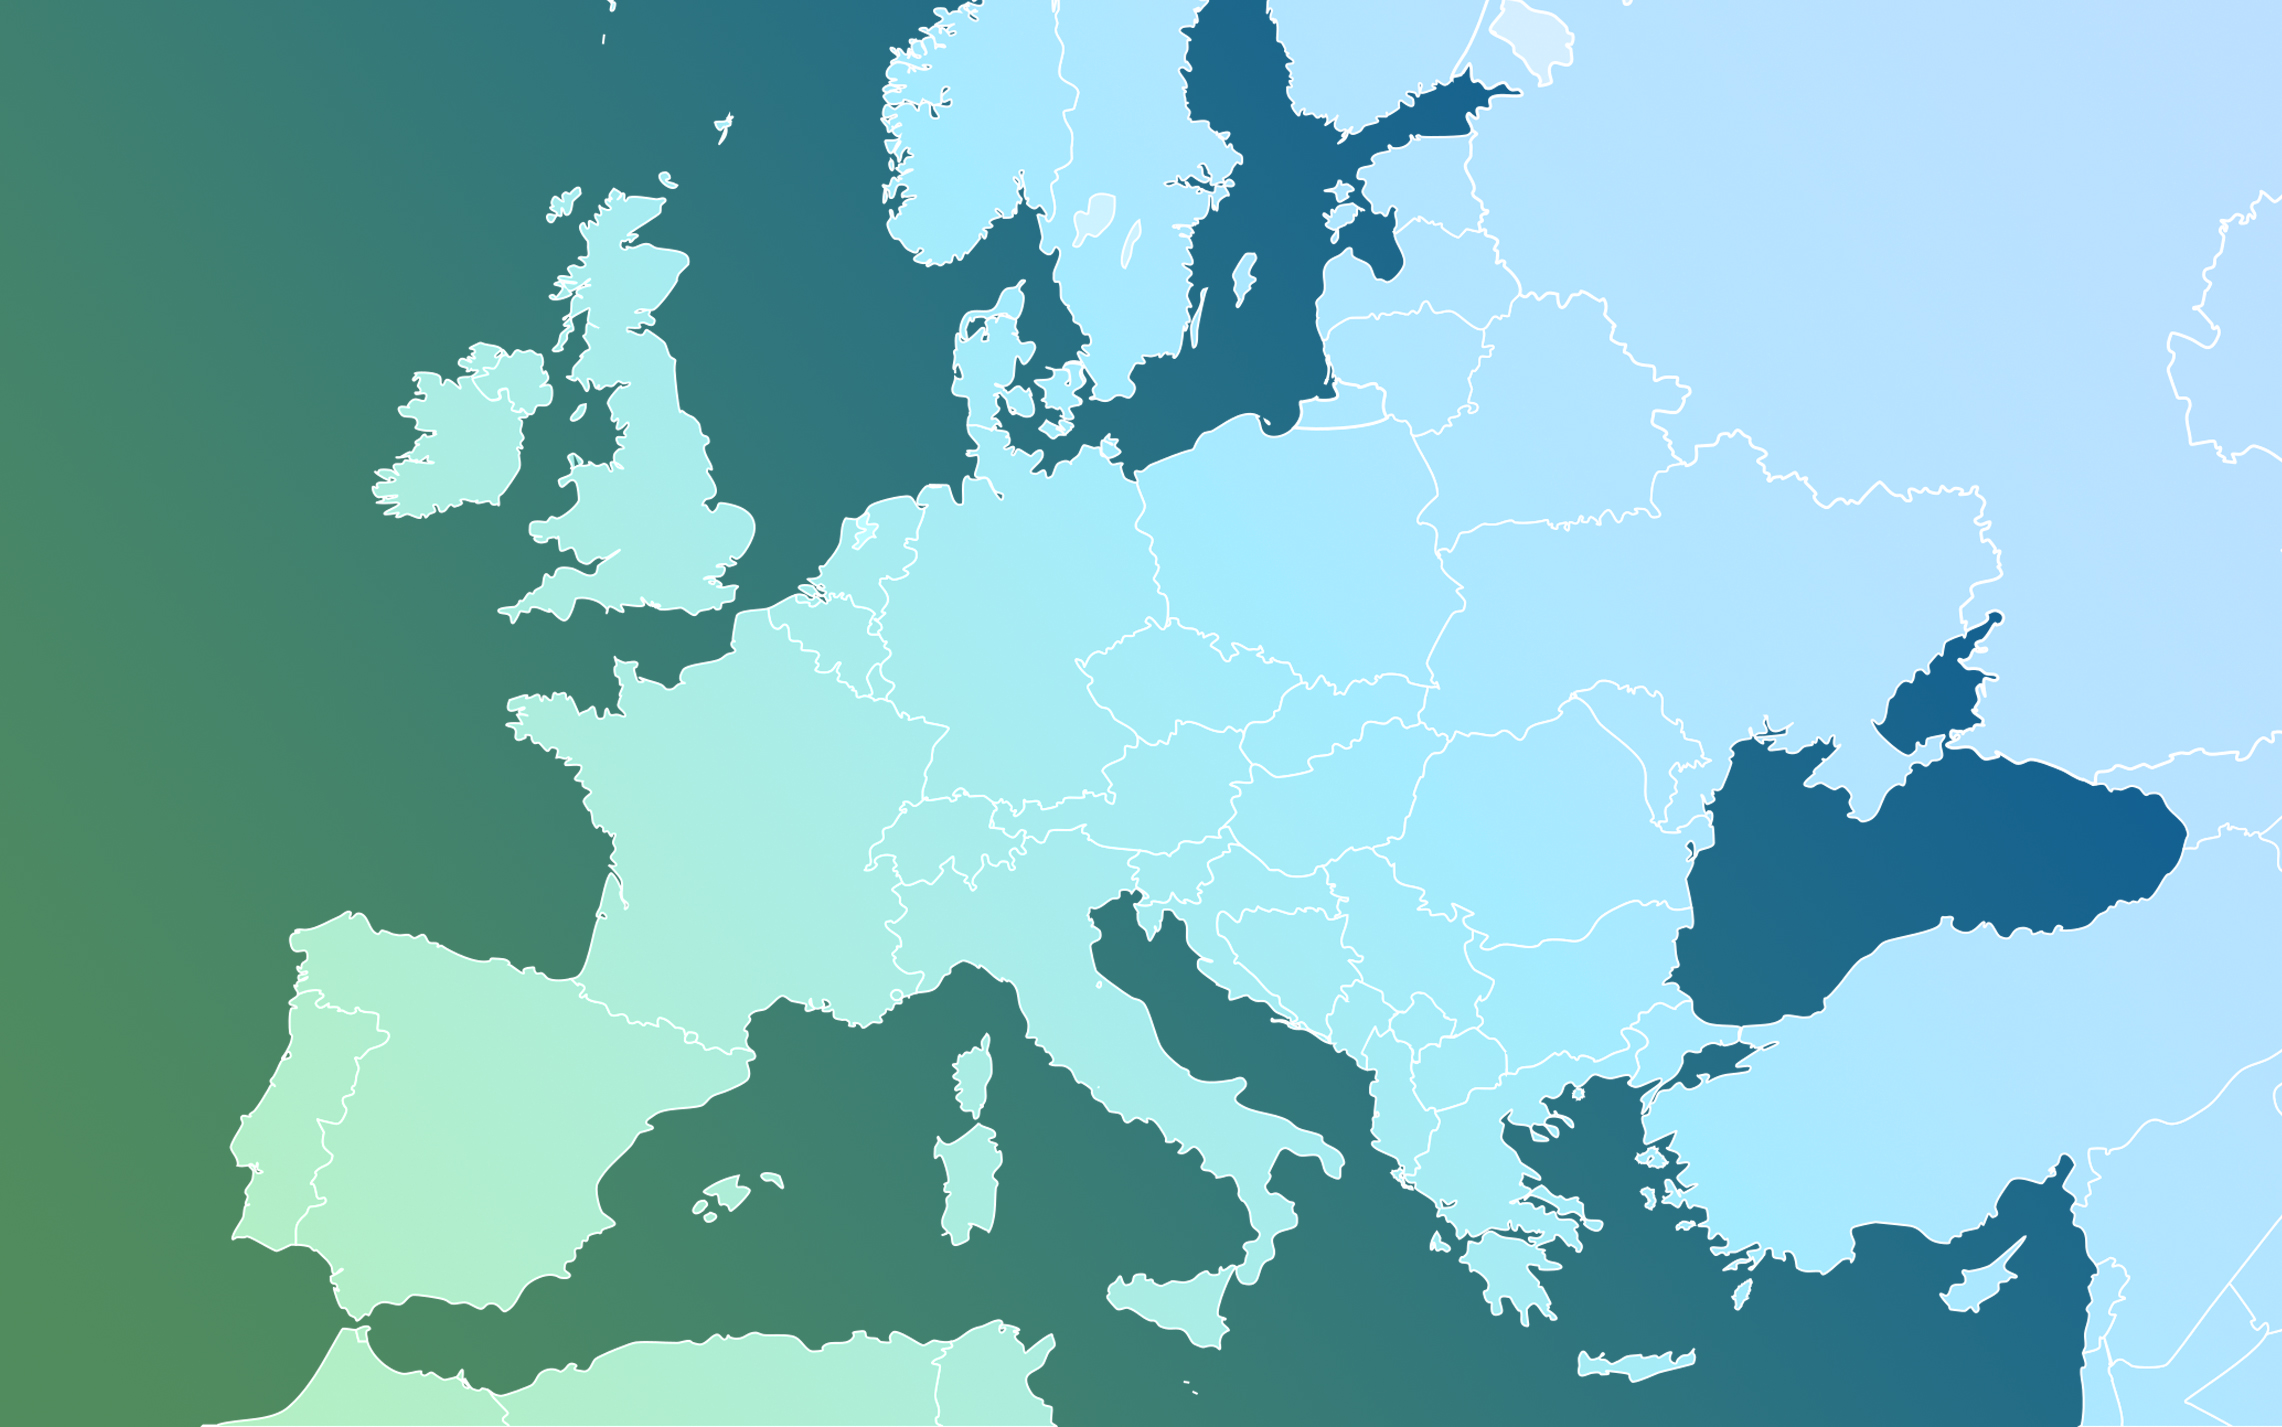 Mapa de Europa destacando Alemania: Ubicación estratégica de Gesinflot como solución líder para la gestión de flotas de transporte en Alemania y en toda Europa.